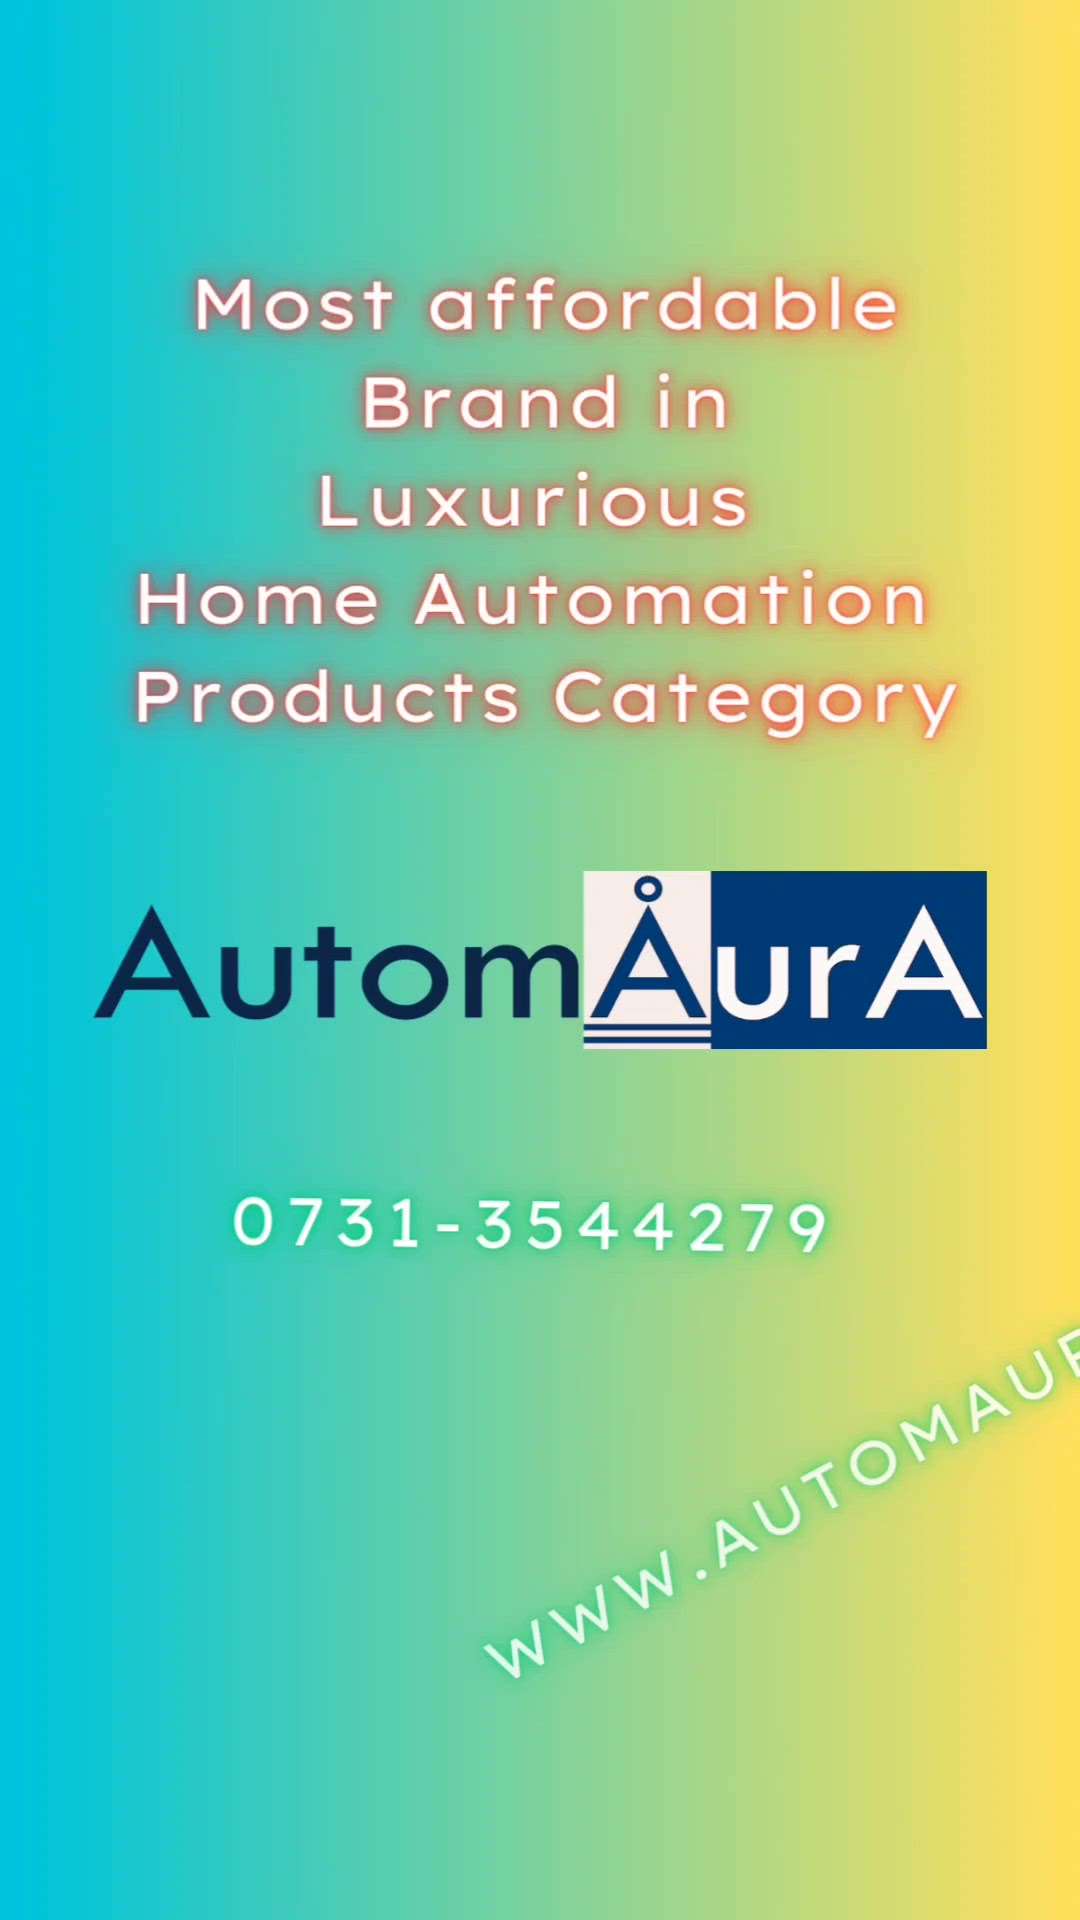 अपने घर या ऑफिस को ऑटोमौरा के बेस्ट ऑटोमेशन प्रॉडक्ट्स की मदद से अपने घर के सभी उपकरणों को मोबाइल से ऑटोमेट करें वो भी सबसे किफ़ायती खर्च में जिससे आपकी बिजली भी बचेगी और लक्ज़री का आनंद भी आप ले पायेंगे  | www.automaura.com | 0731-3544279
➡3D Home Designs
➡3D Bungalow Designs
➡3D Apartment Designs
➡3D House Designs
➡3D Showroom Designs
➡3D Shops Designs 
➡3D School Designs
➡3D Commercial Building Designs
➡Architectural planning
-Estimation
-Renovation of Elevation
➡Renovation of planning
➡3D Rendering Service
➡3D Interior Design
➡3D Planning
And Many more.....
#3d #HouseDesigns #3dhouse #floorplan #2DPlans #2dDesign #2BHKHouse  #architecture #interiordesign #realestate #design #floorplans #d #architect #home #homedesign #interior #newhome #construction #sketch #house #dfloorplan #houseplan #housedesign #homeplan #plan #sketchup #dreamhome  #arch #home #homesweethome #homedecor #homedesign #homeinterior #architecture #builder #interiordesign #design #luxury #luxuryhomes #housedesign #In